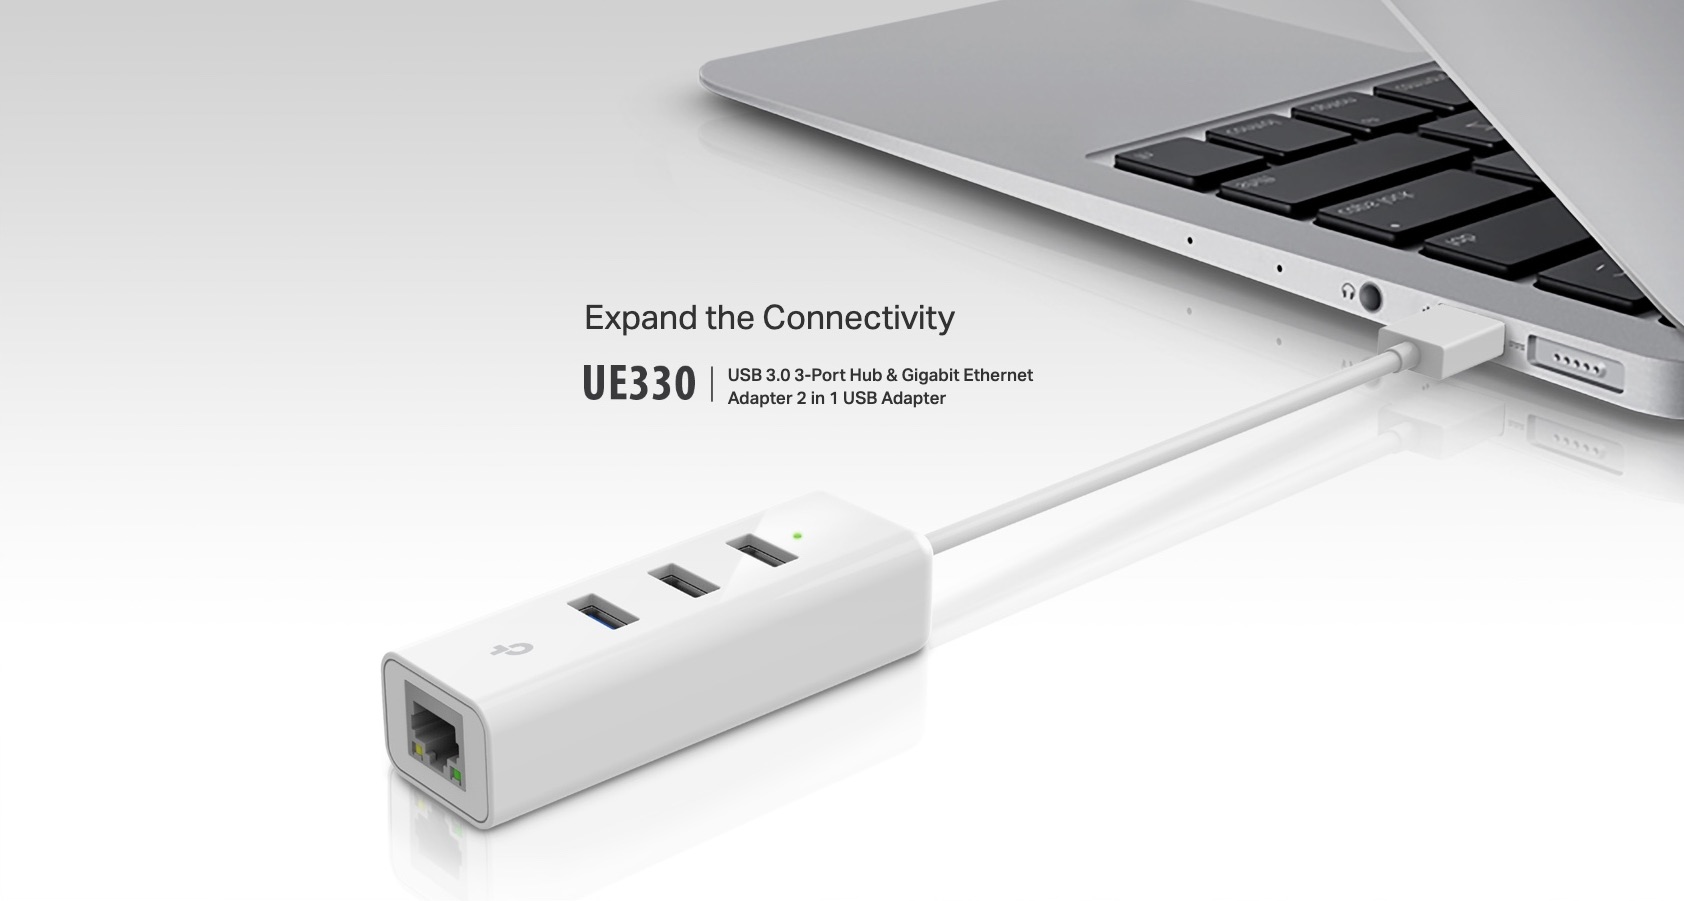 TP-Link-UE330-USB-3.0-3-Port-Hub-And-Gigabit-Ethernet-Adapter-2-in-1-USB-Adapter-Description-1